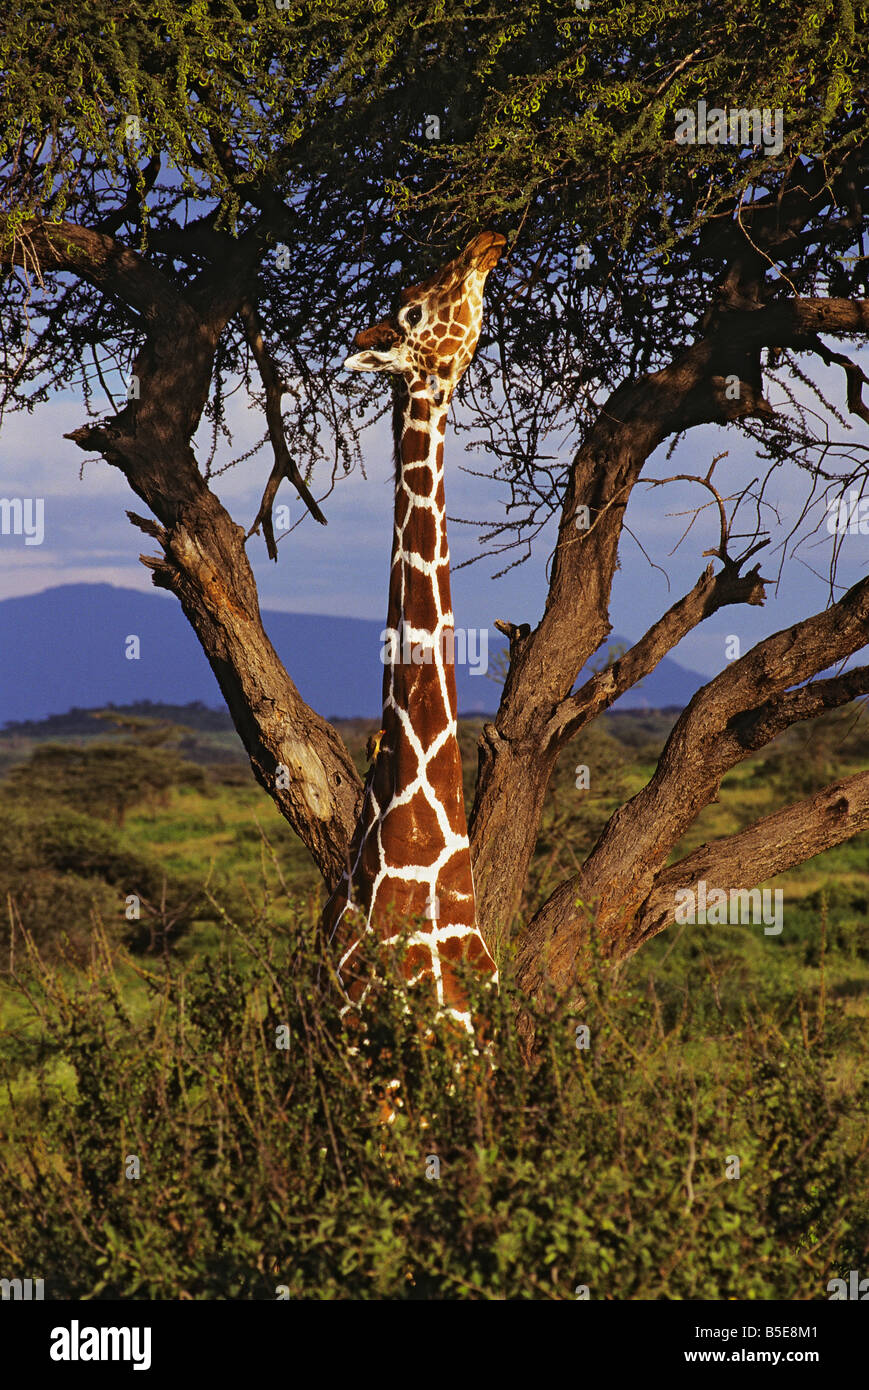 La giraffa con il suo collo lungo in una struttura ad albero di Acacia Foto Stock